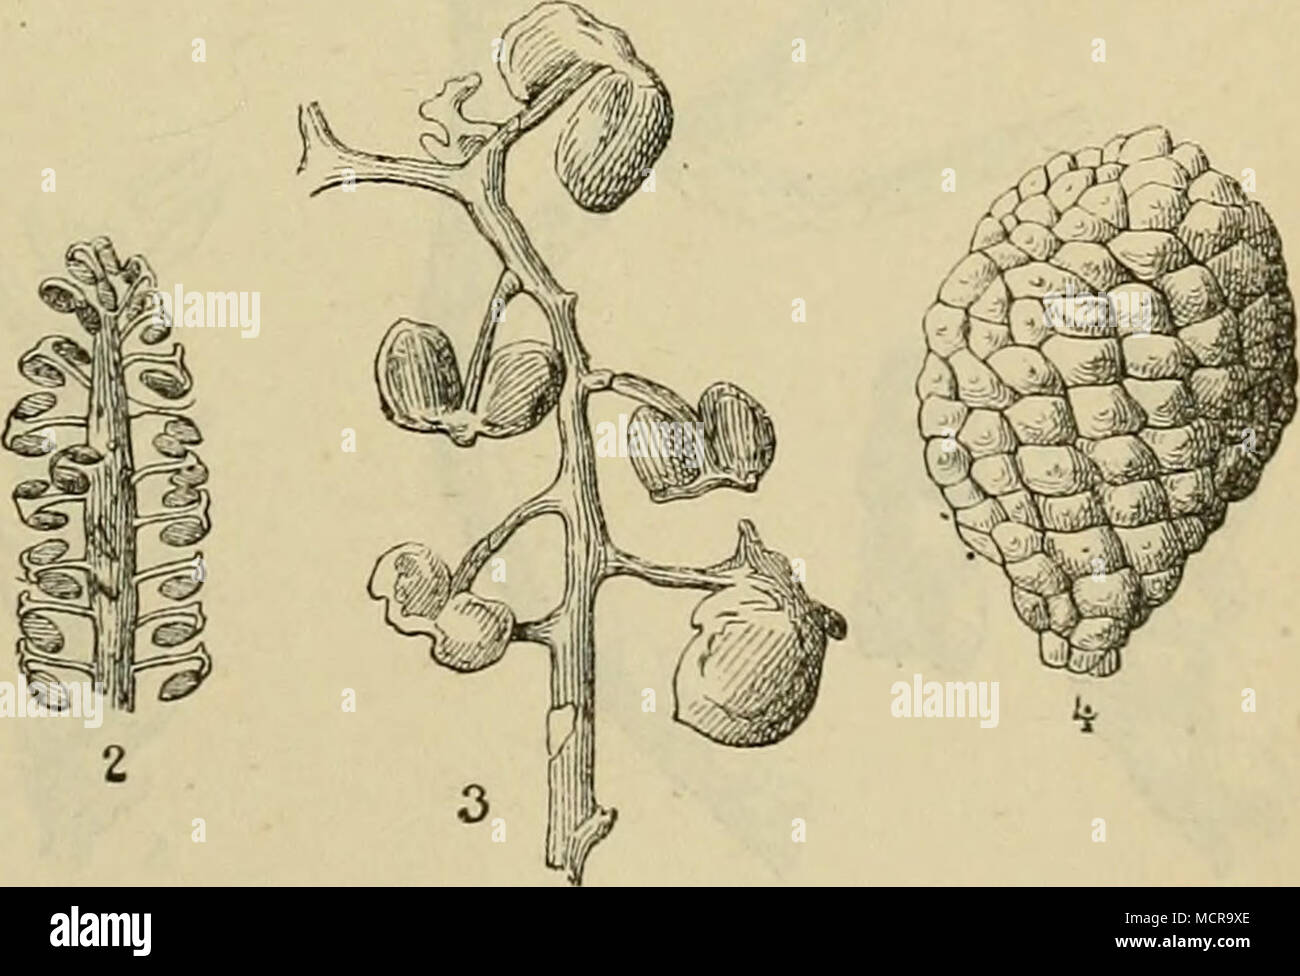 . Charakteristische Jurapflanzen: — Fruchtorgane der C)-cadeen. 1. Cycadospadix Hennoquei (Pom.); Schimp., Fruchtblatt (Infralias). — 2. Steno- rhachis Ponceleti (Nath.), Sap., Fruchtorgan von Podozamites (Infralias). — 3. Beania (jracilis, Carr. (Oolith). — 4. Zamiostrobus incrassalus, L. et H. (Oolith). Stock Photo